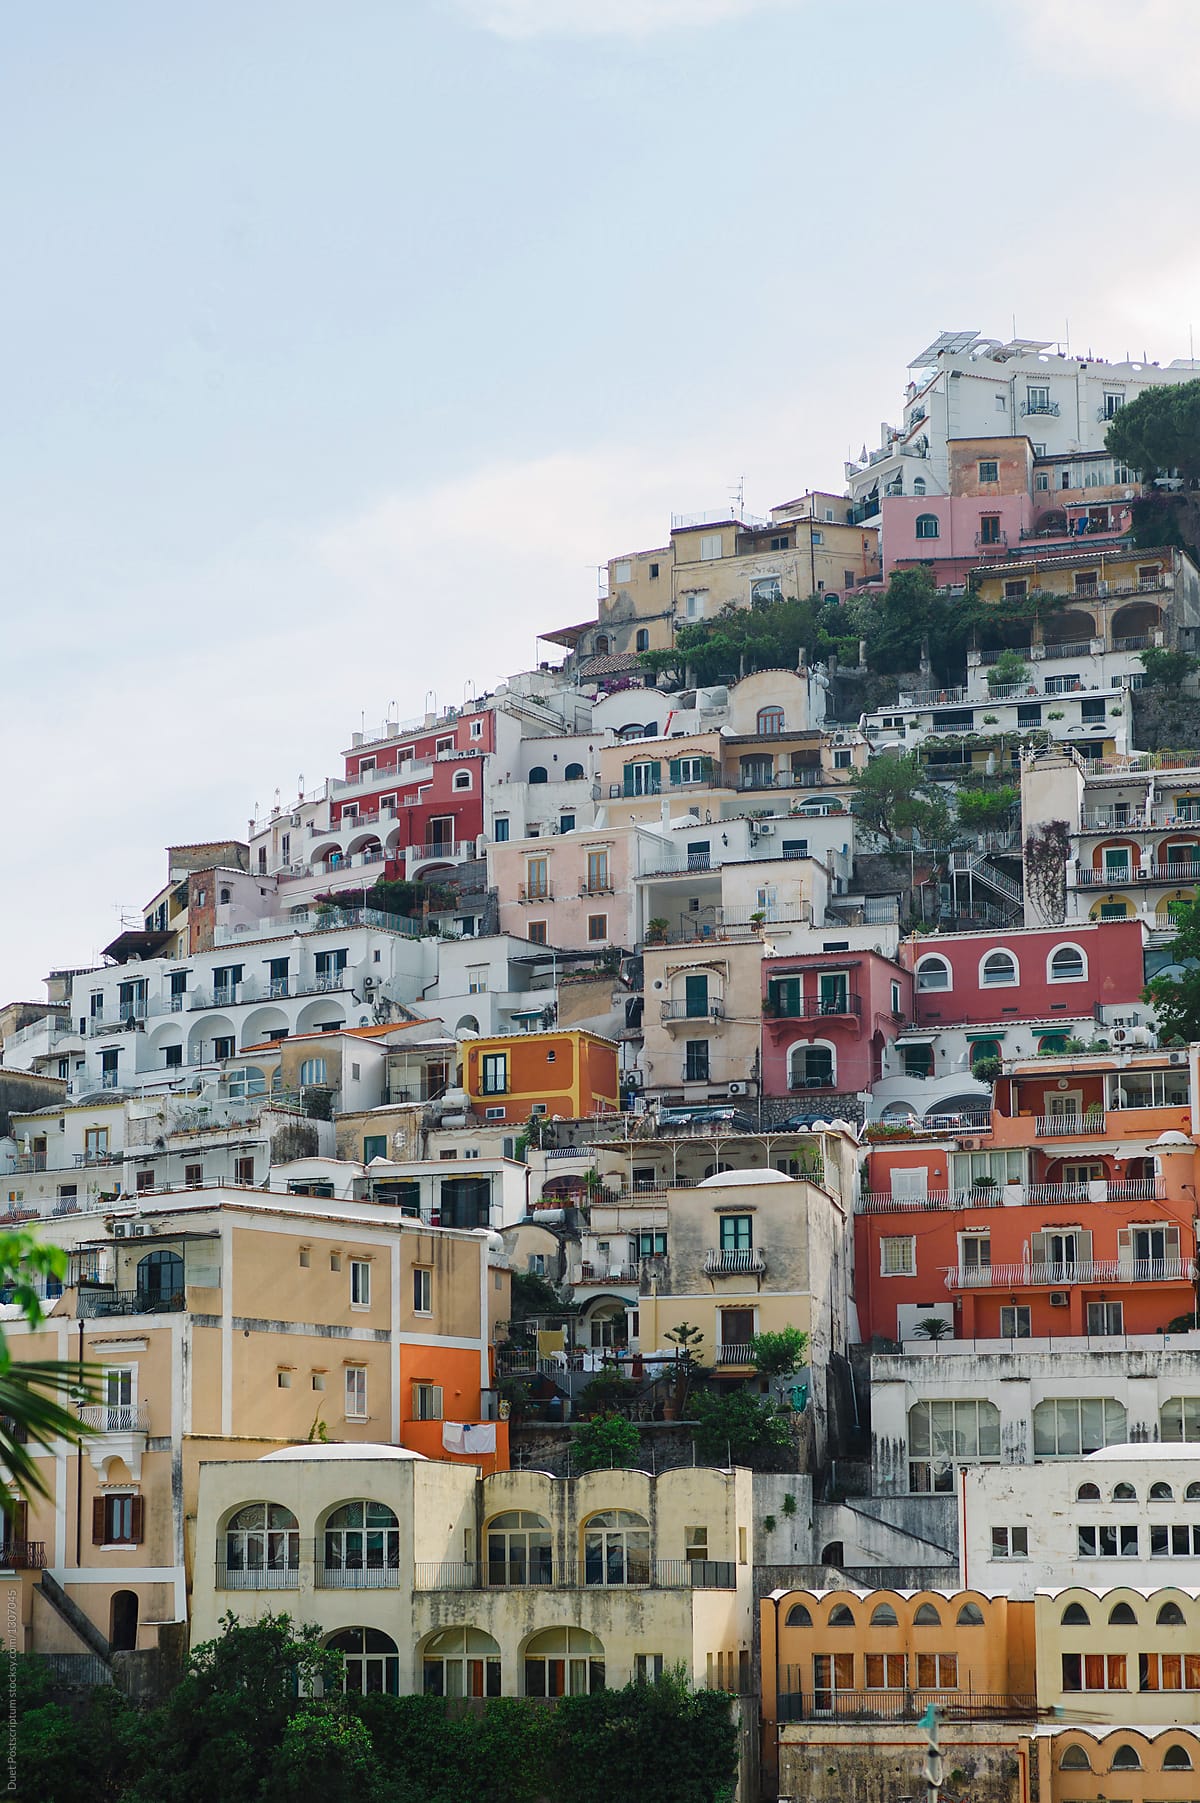 The Colourful Amalfi Coast of Italy